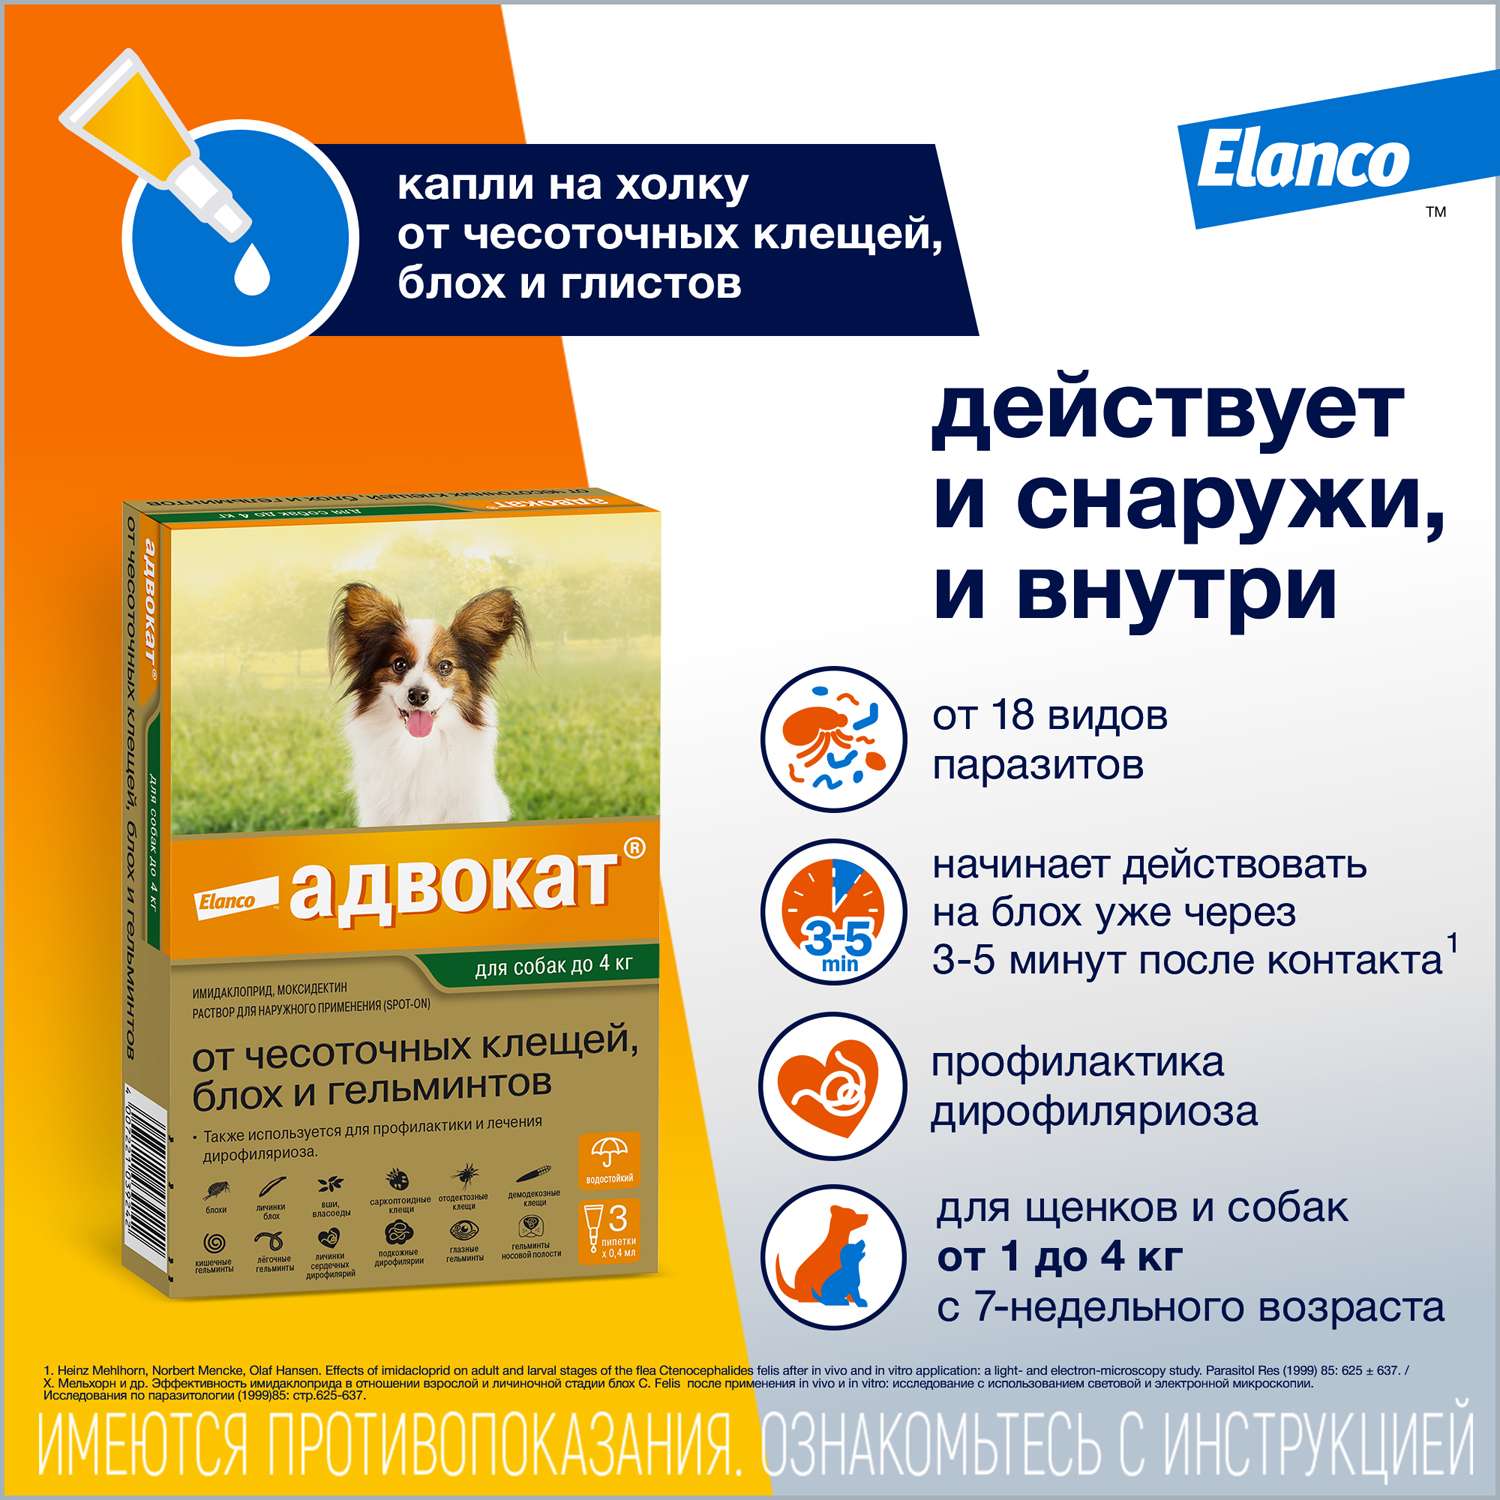 Препарат инсектоакарицидный для собак Elanco Адвокат 0.4мл 3пипетки - фото 2